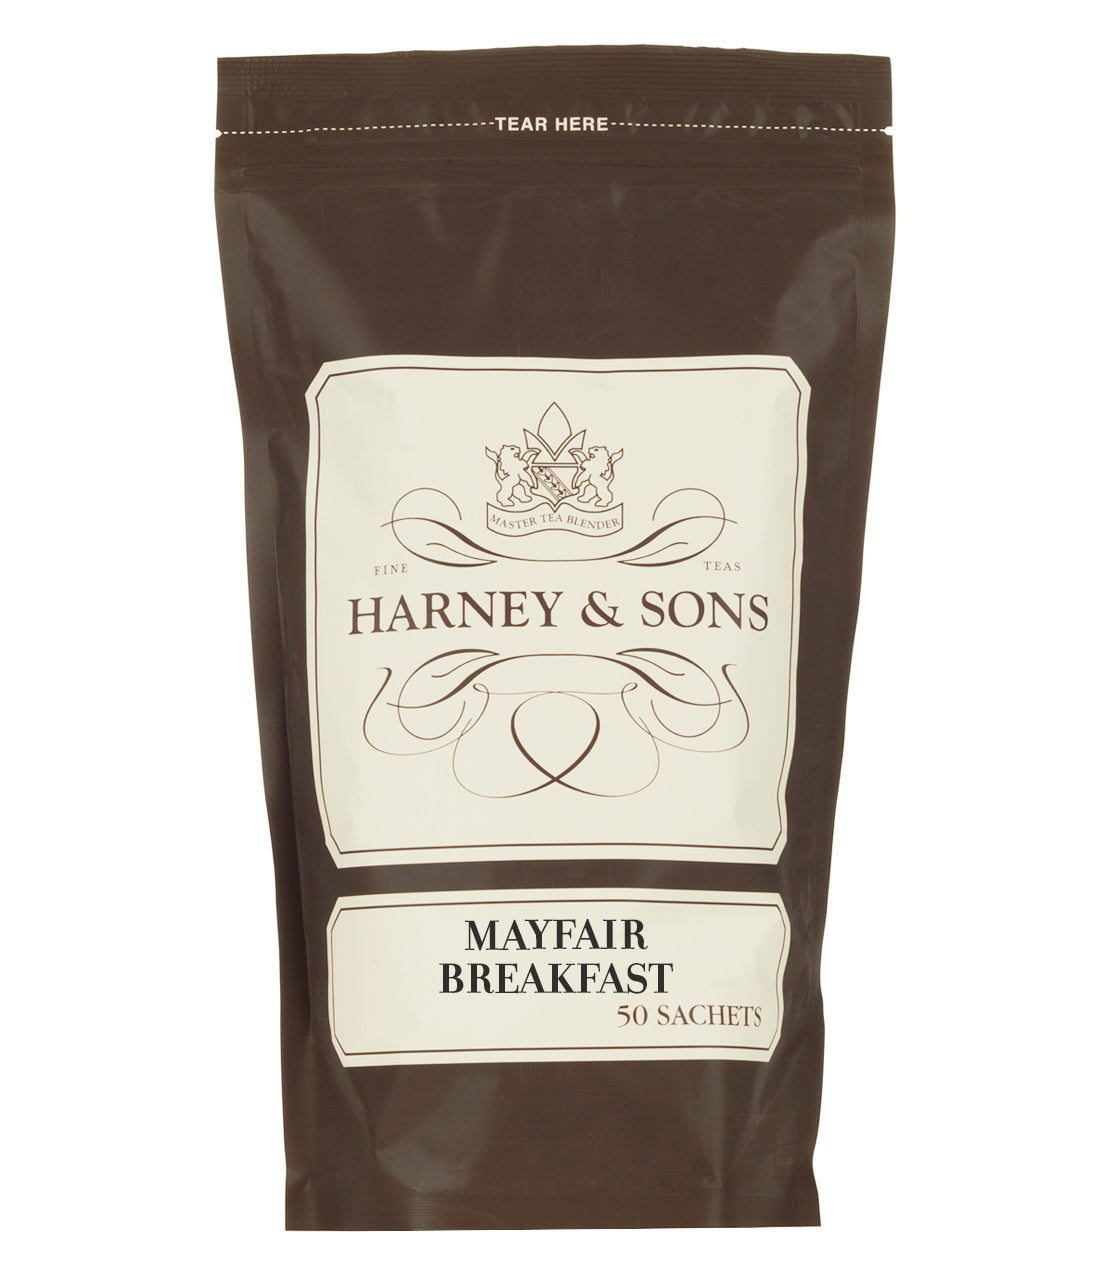 Mayfair Breakfast - Sachets Bag of 50 Sachets - Harney & Sons Fine Teas